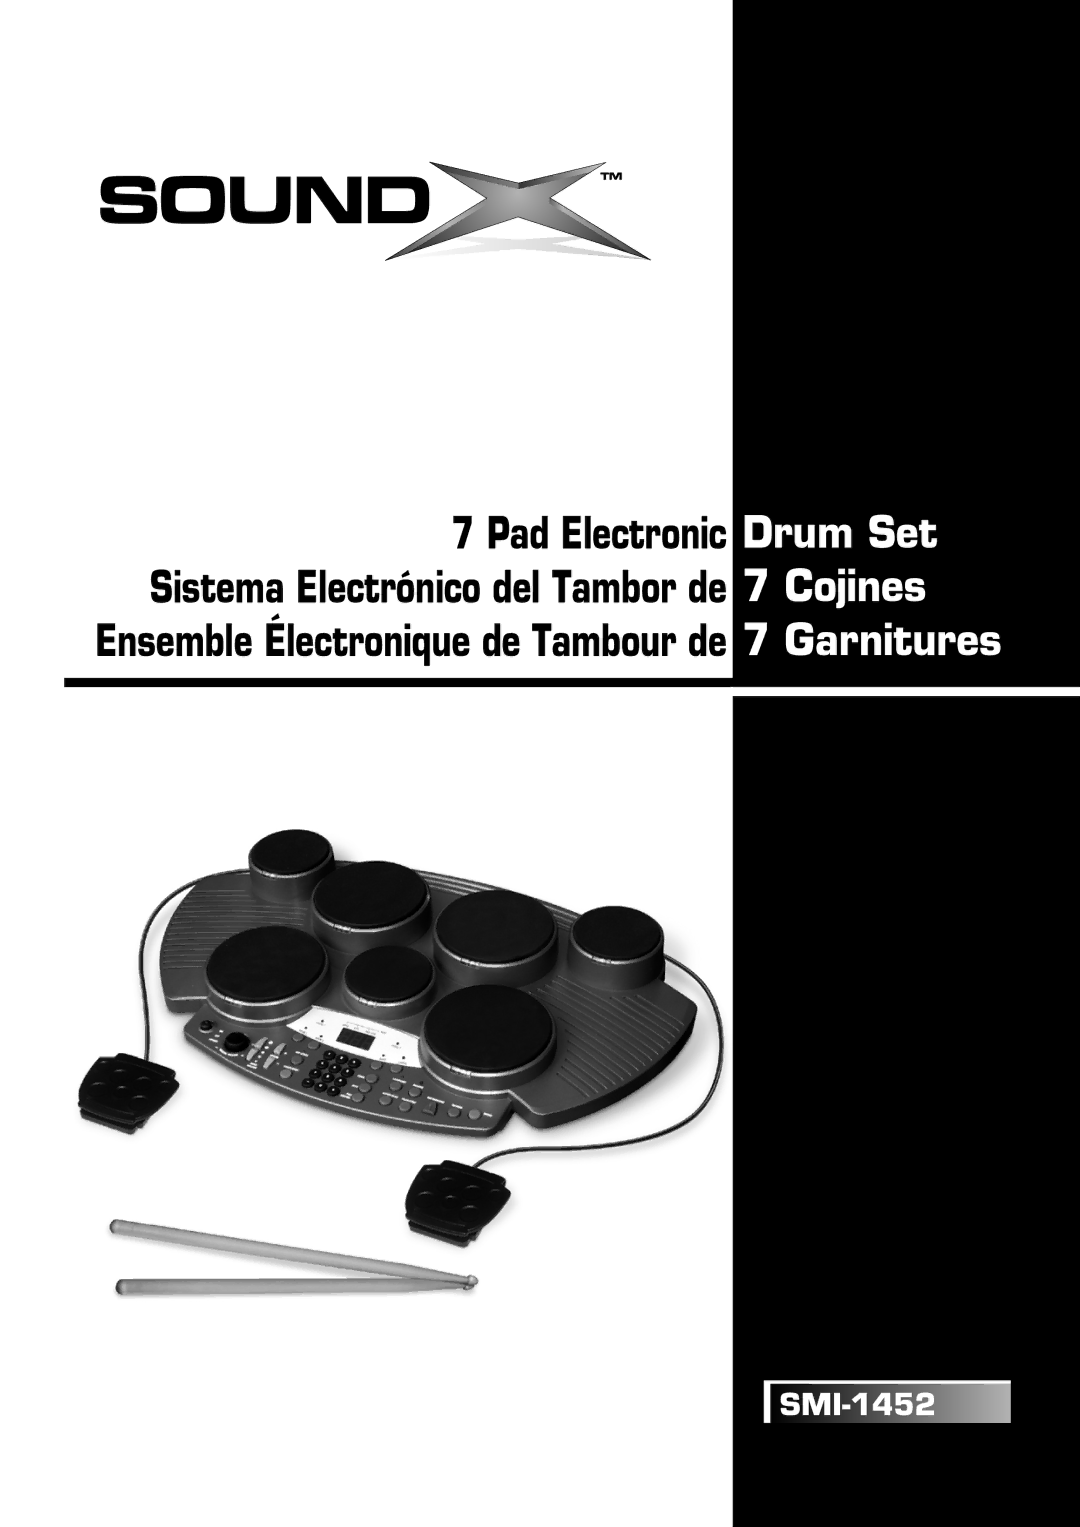 The Singing Machine SMI-1452 manual Ensemble Électronique de Tambour de 7 Garnitures 